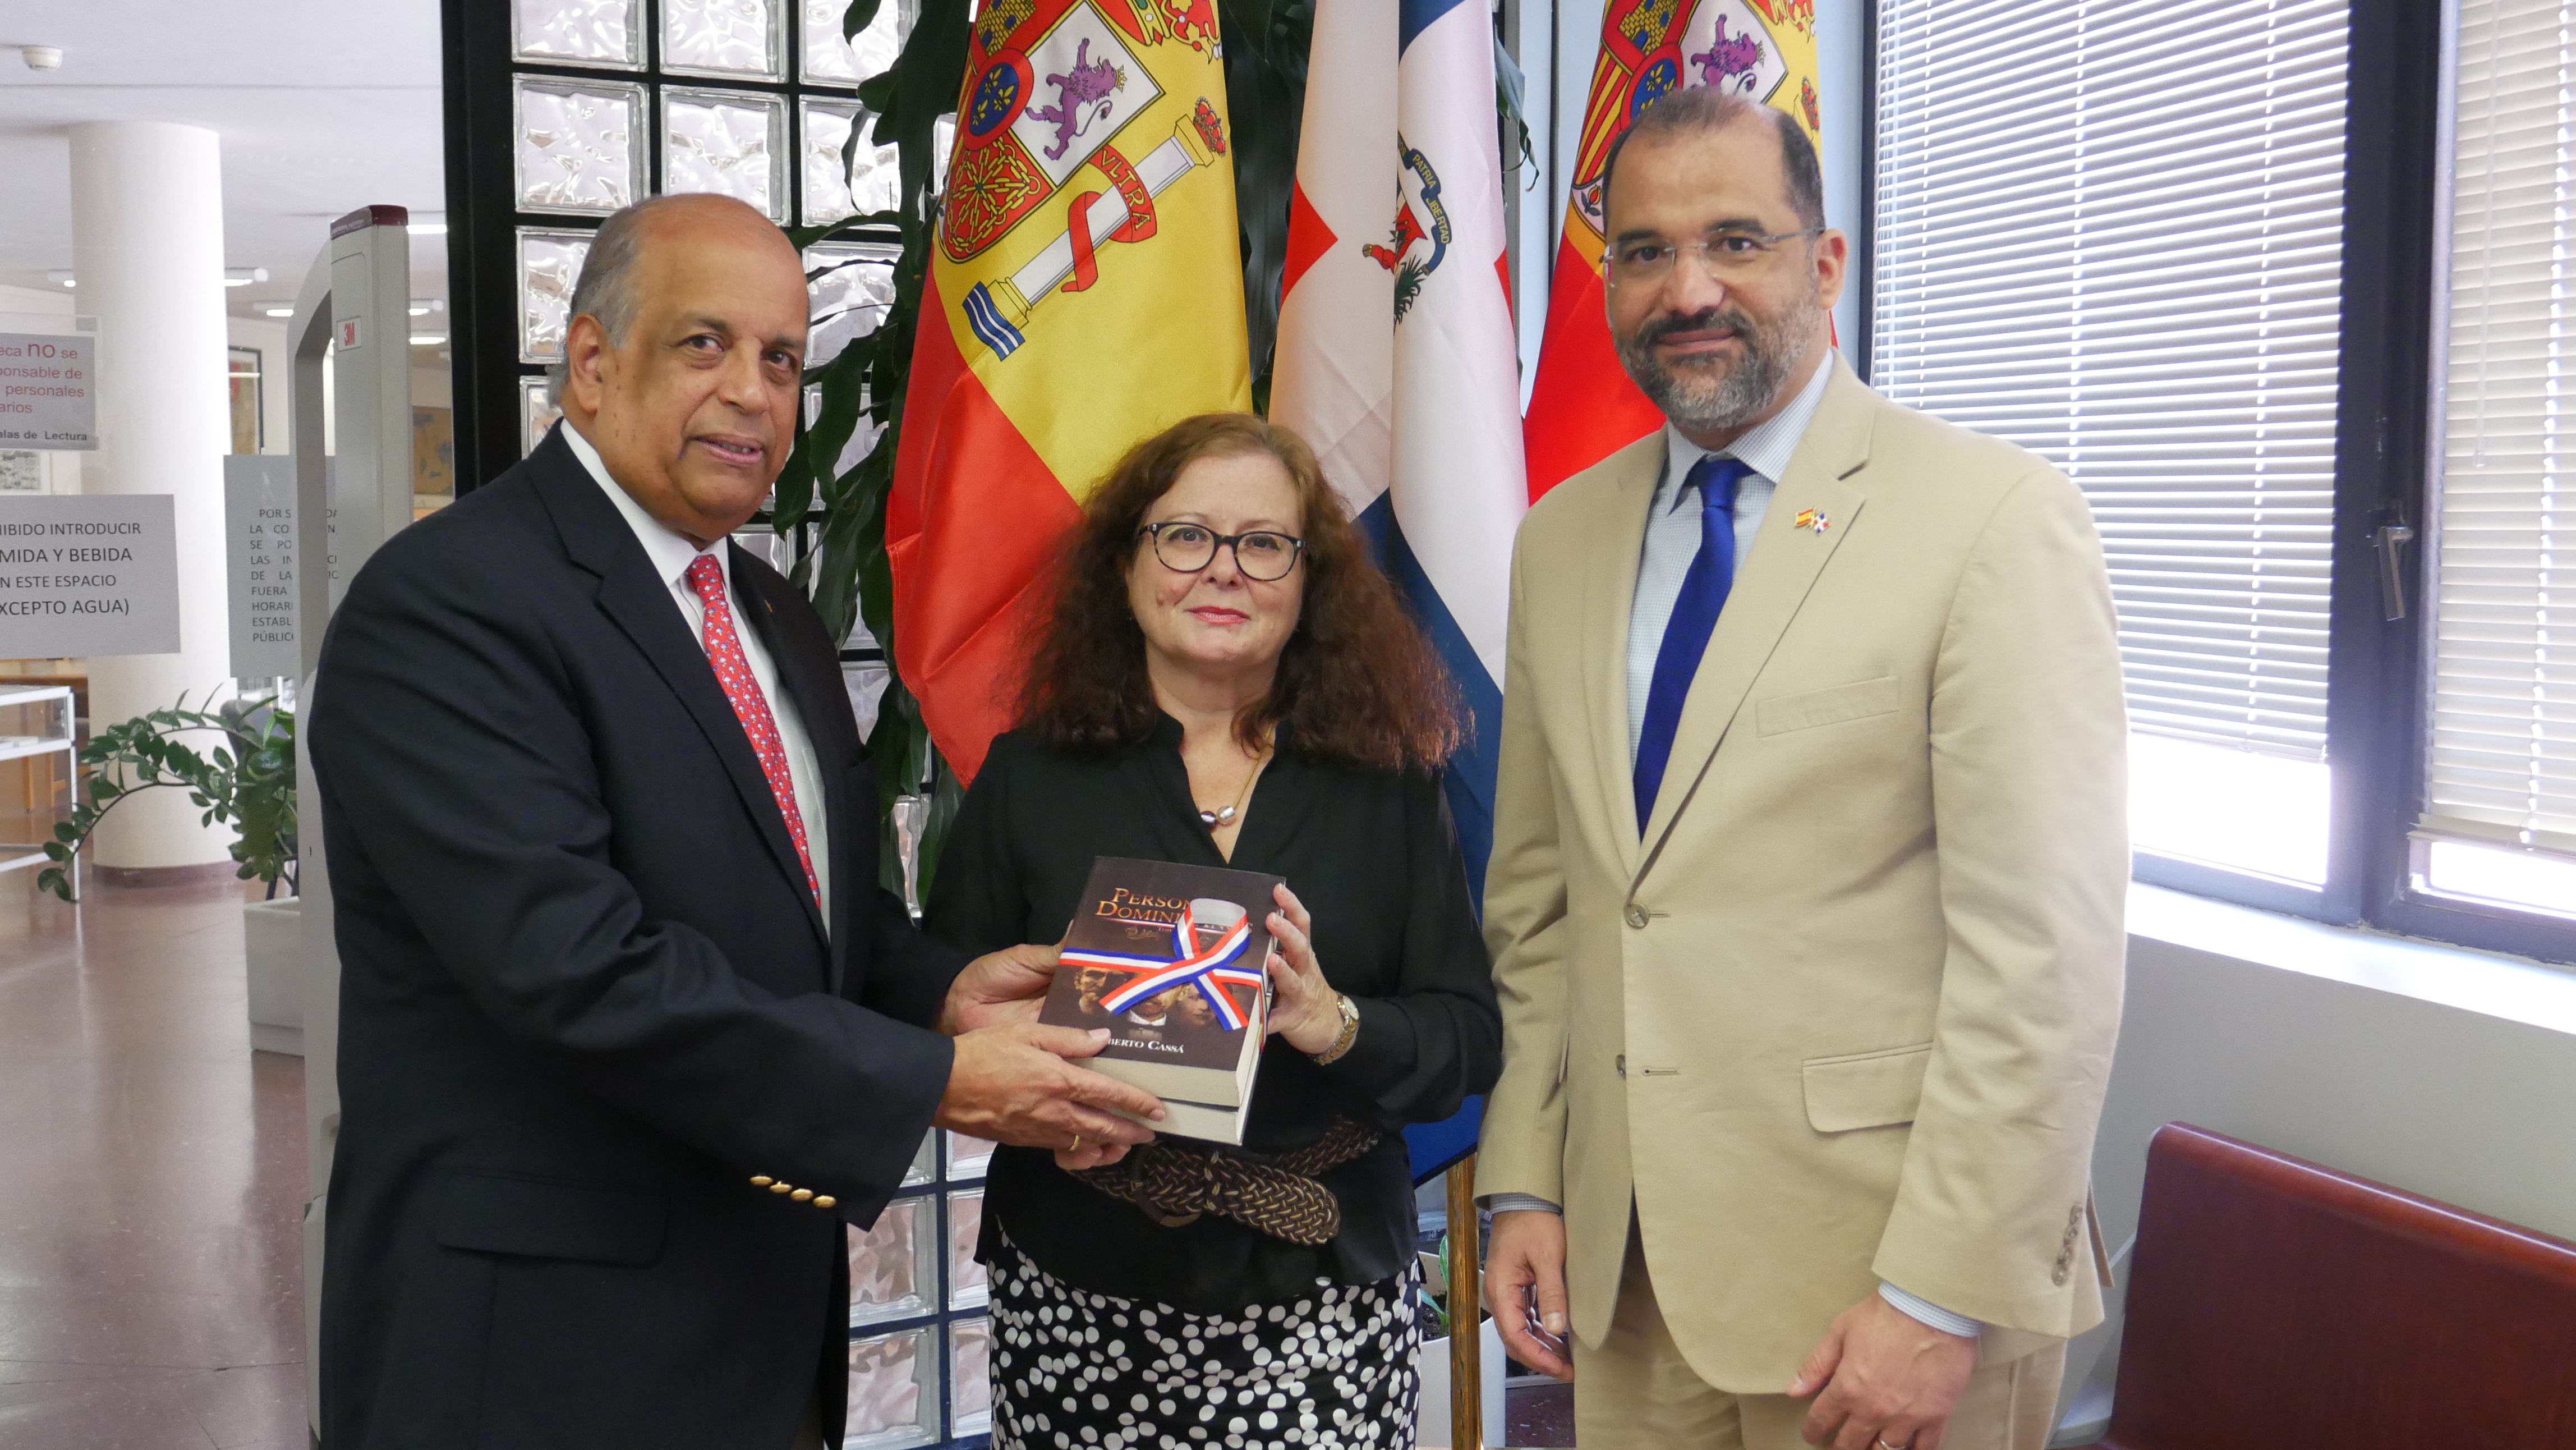 Embajada Dominicana en España dona libros a Biblioteca de la AECID